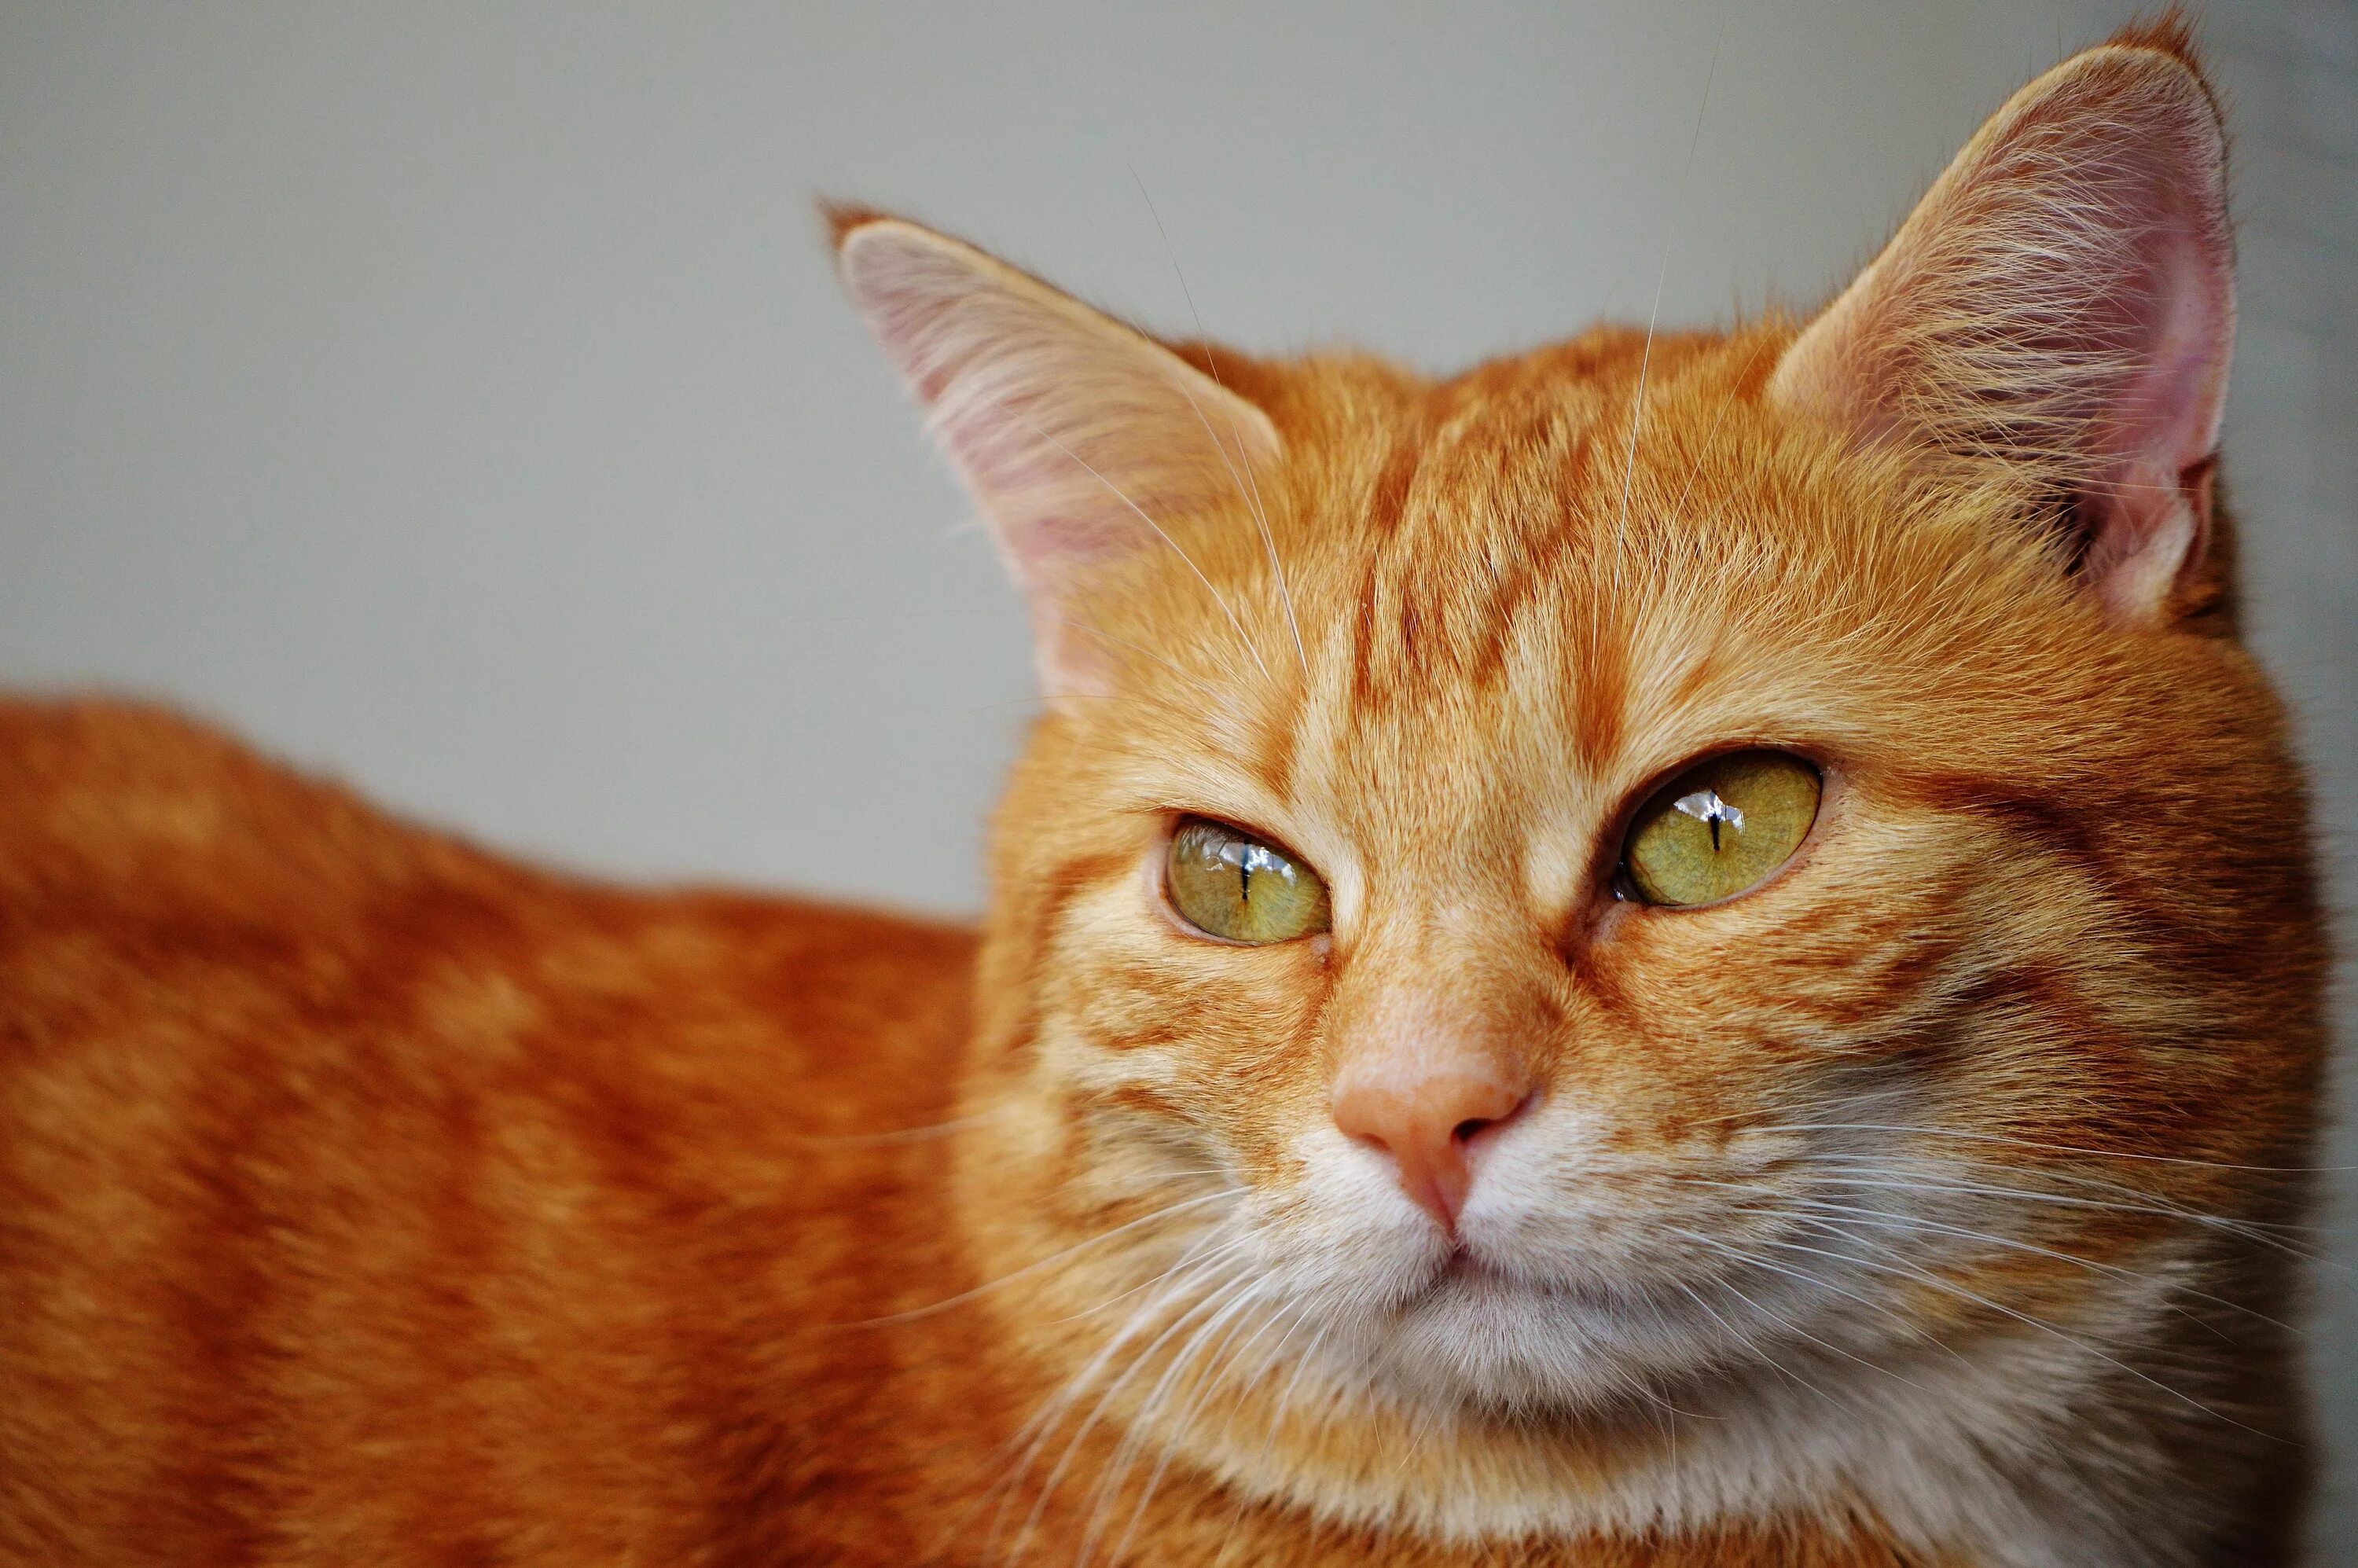 Европейский короткошерстный кот рыжий. Европейская короткошерстная кошка рыжая. Бразильская короткошерстная кошка рыжая цейлонская. Бенгальская короткошерстная кошка рыжая. Картинка рыжего цвета